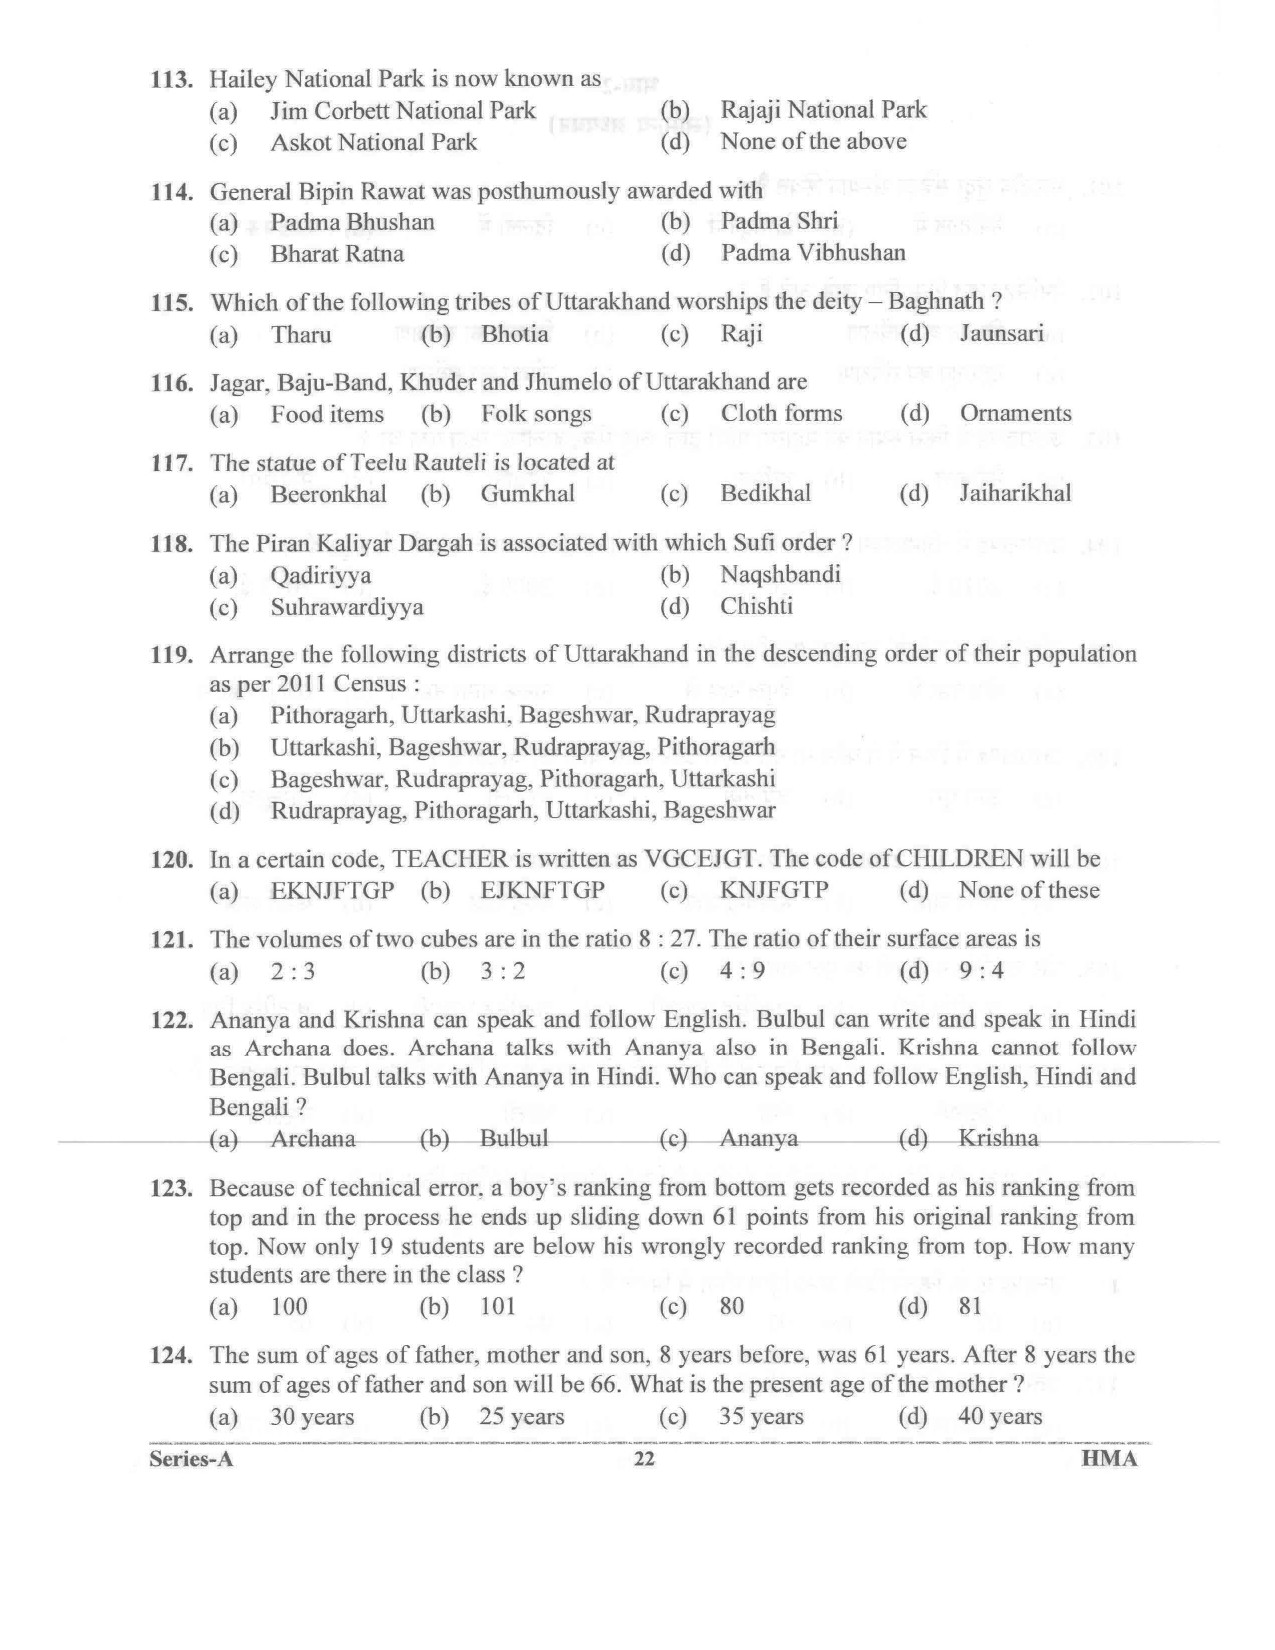 UKPSC Vyawasthapak Examination Question Paper 2021 21